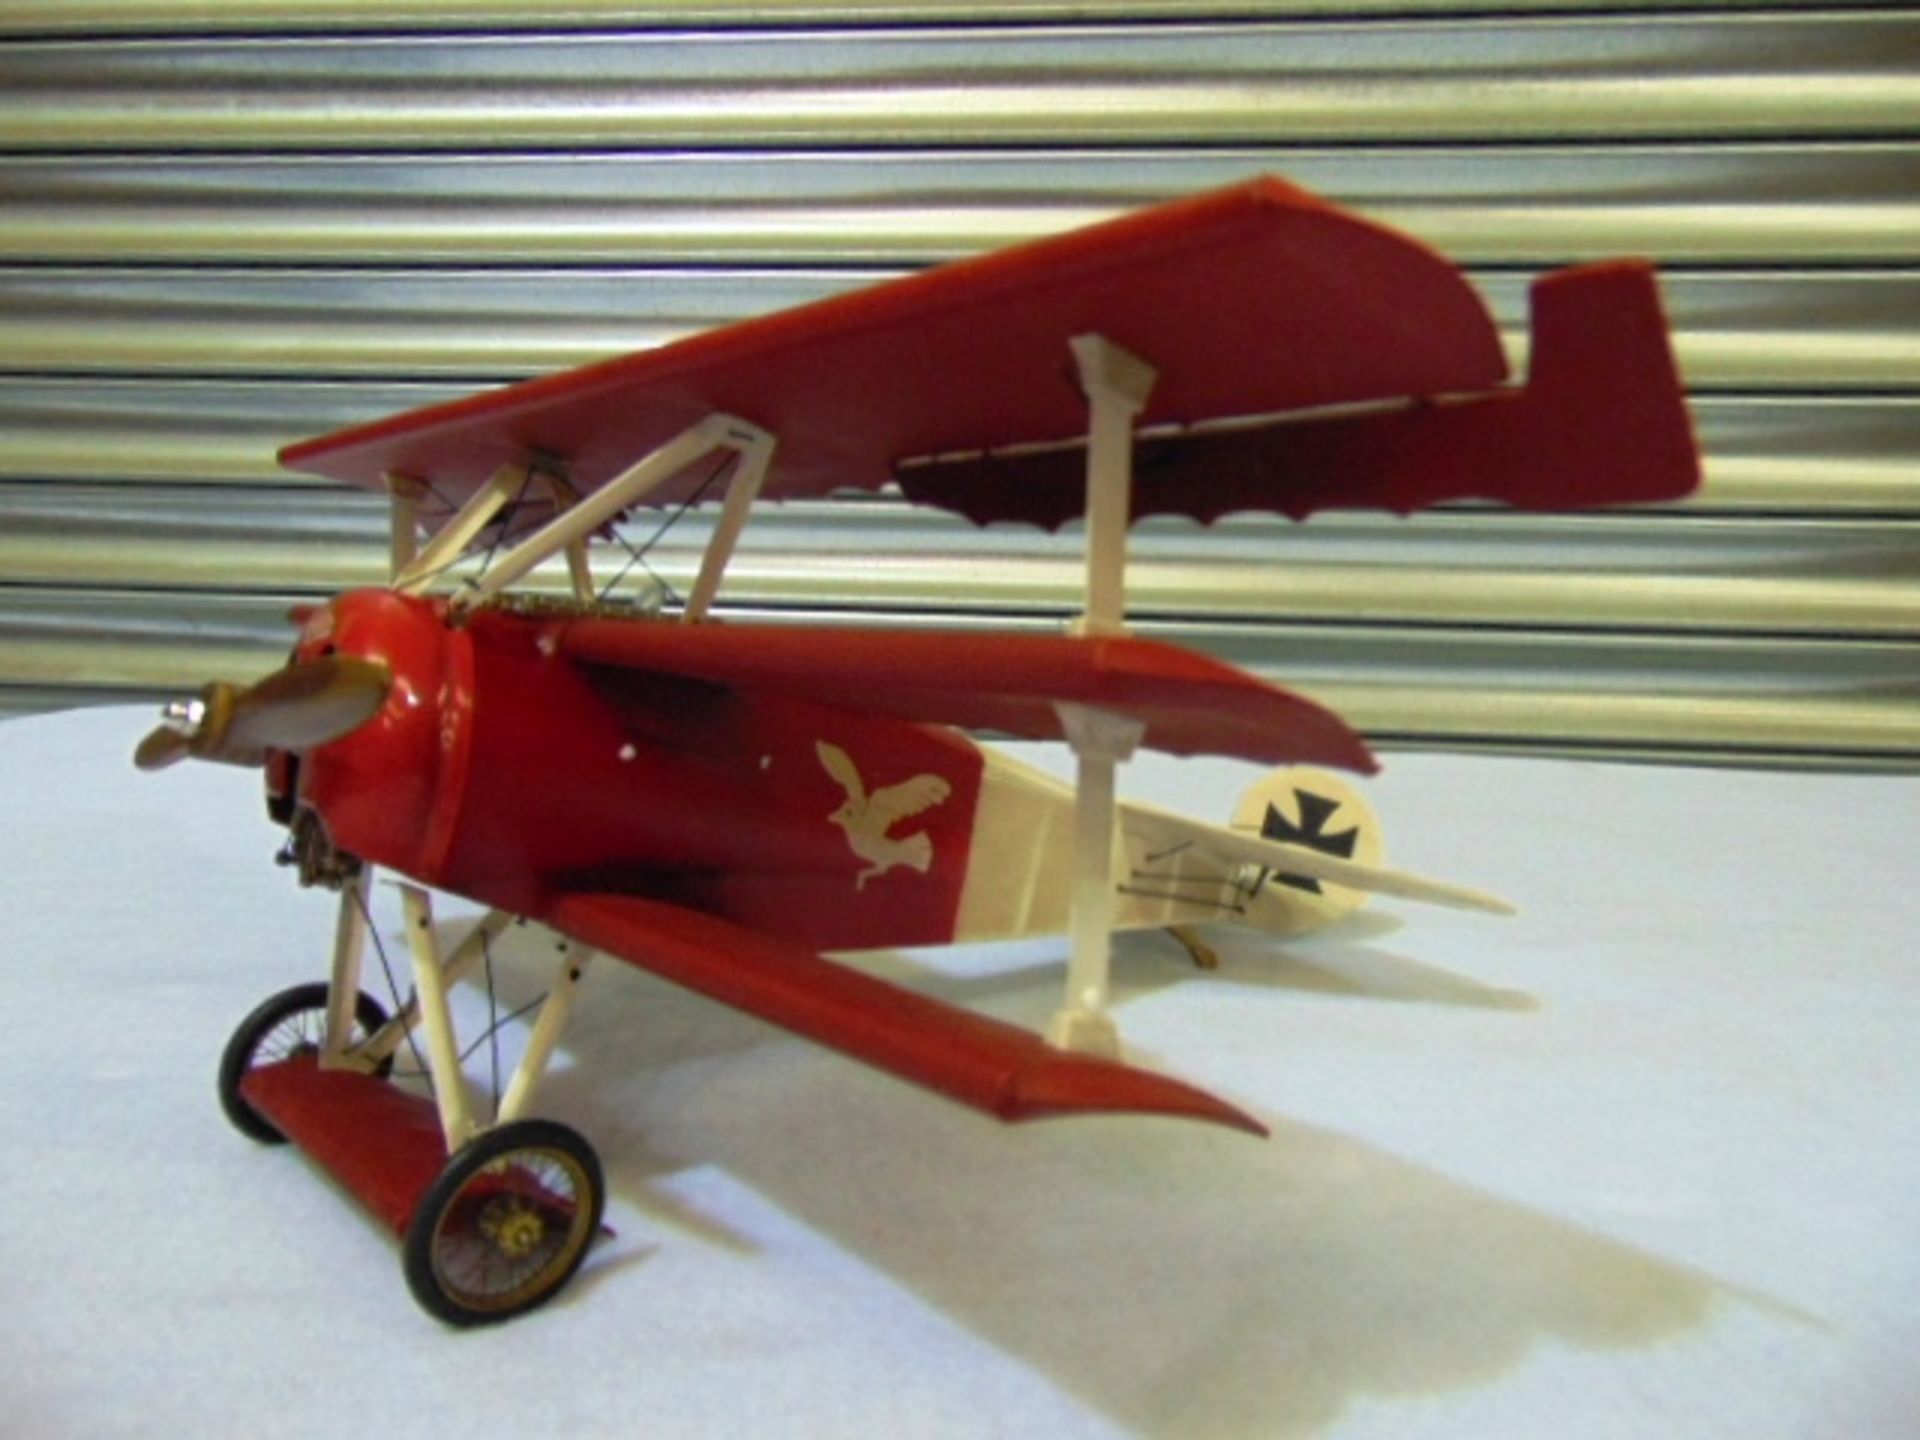 Legendary Red Baron's Fokker Triplane Detailed Model - Image 2 of 8